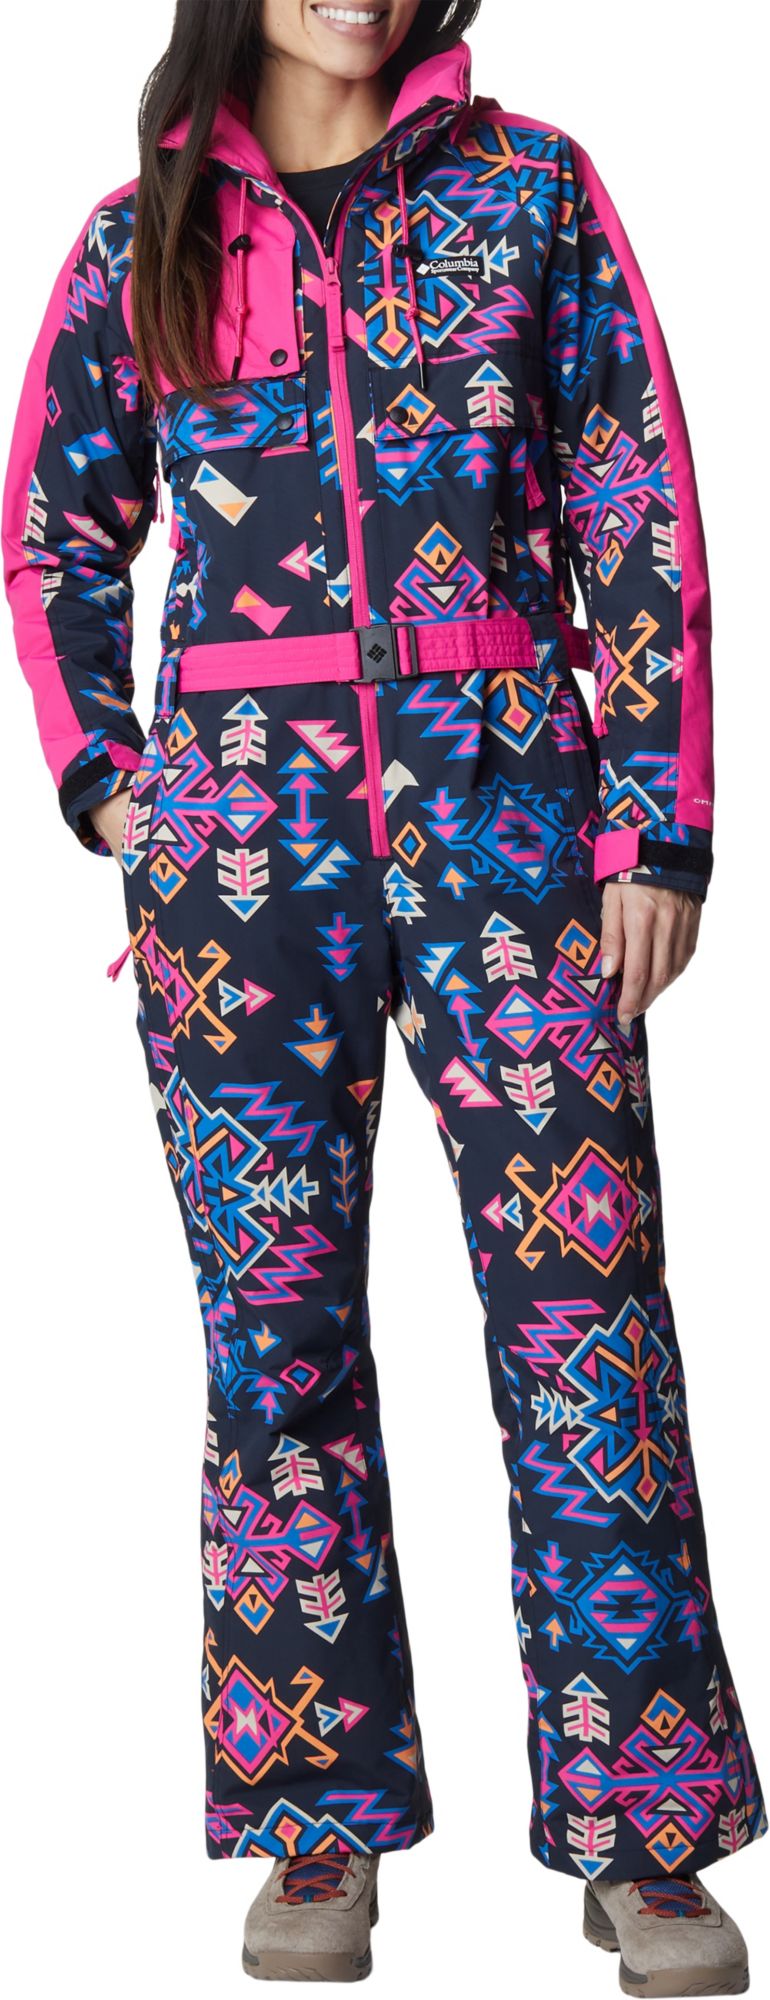 Photos - Ski Wear Columbia Women's Wintertrainer Snowsuit, XL, Blck Nature Print/Fuschia 23C 